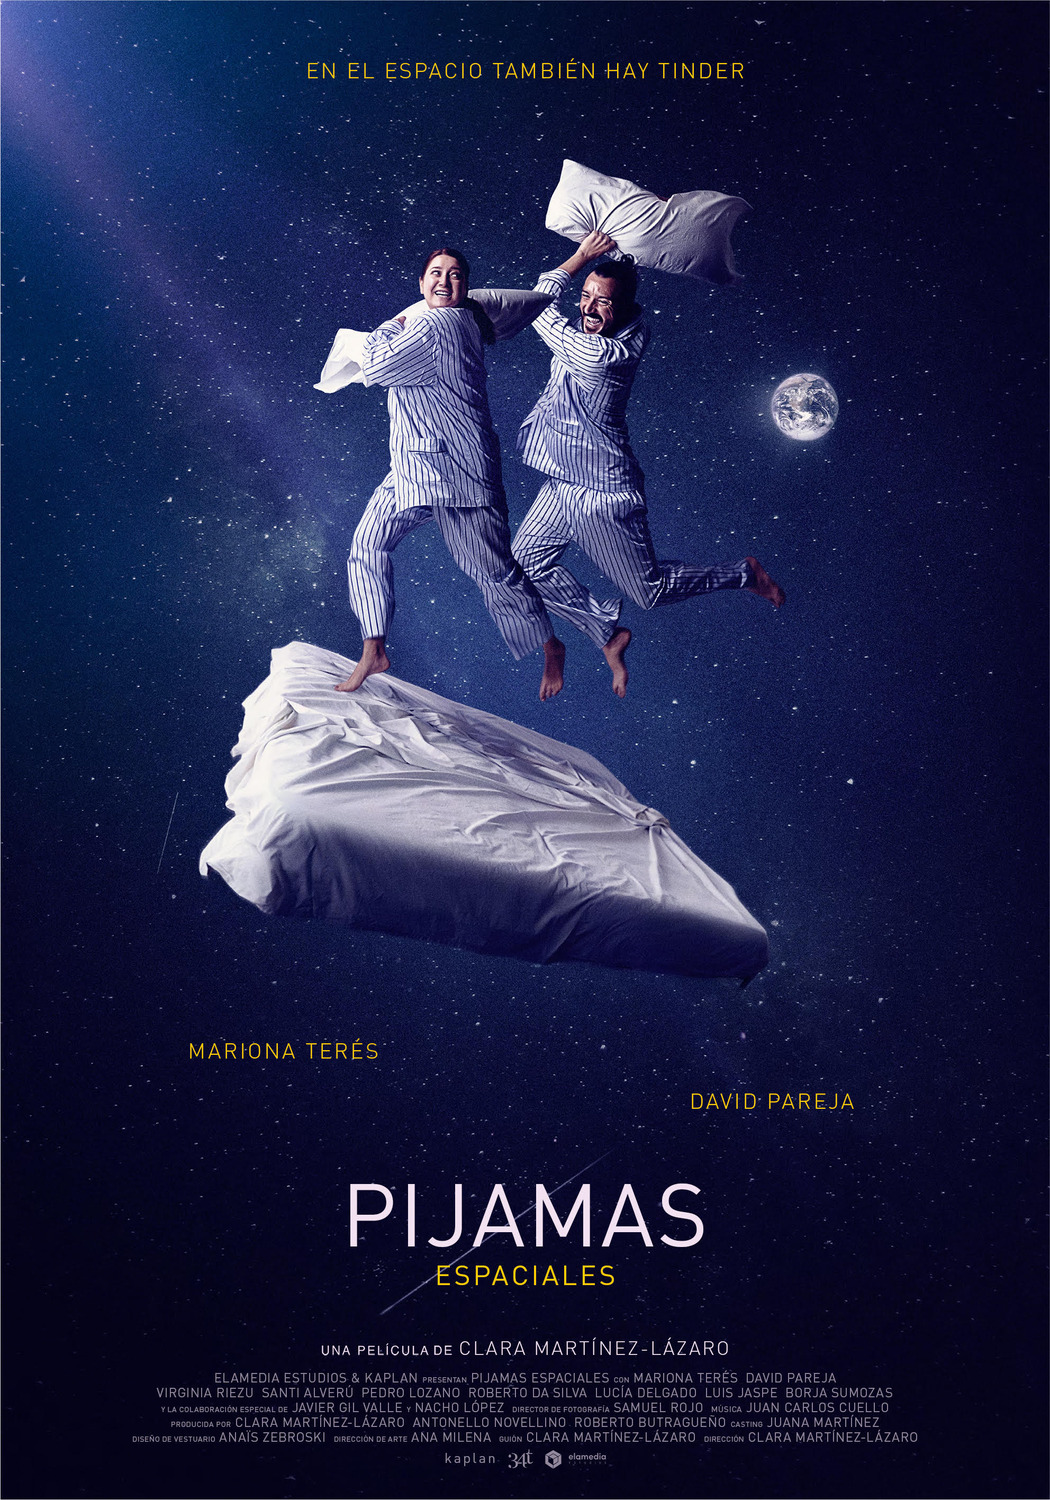 Extra Large Movie Poster Image for Pijamas Espaciales 